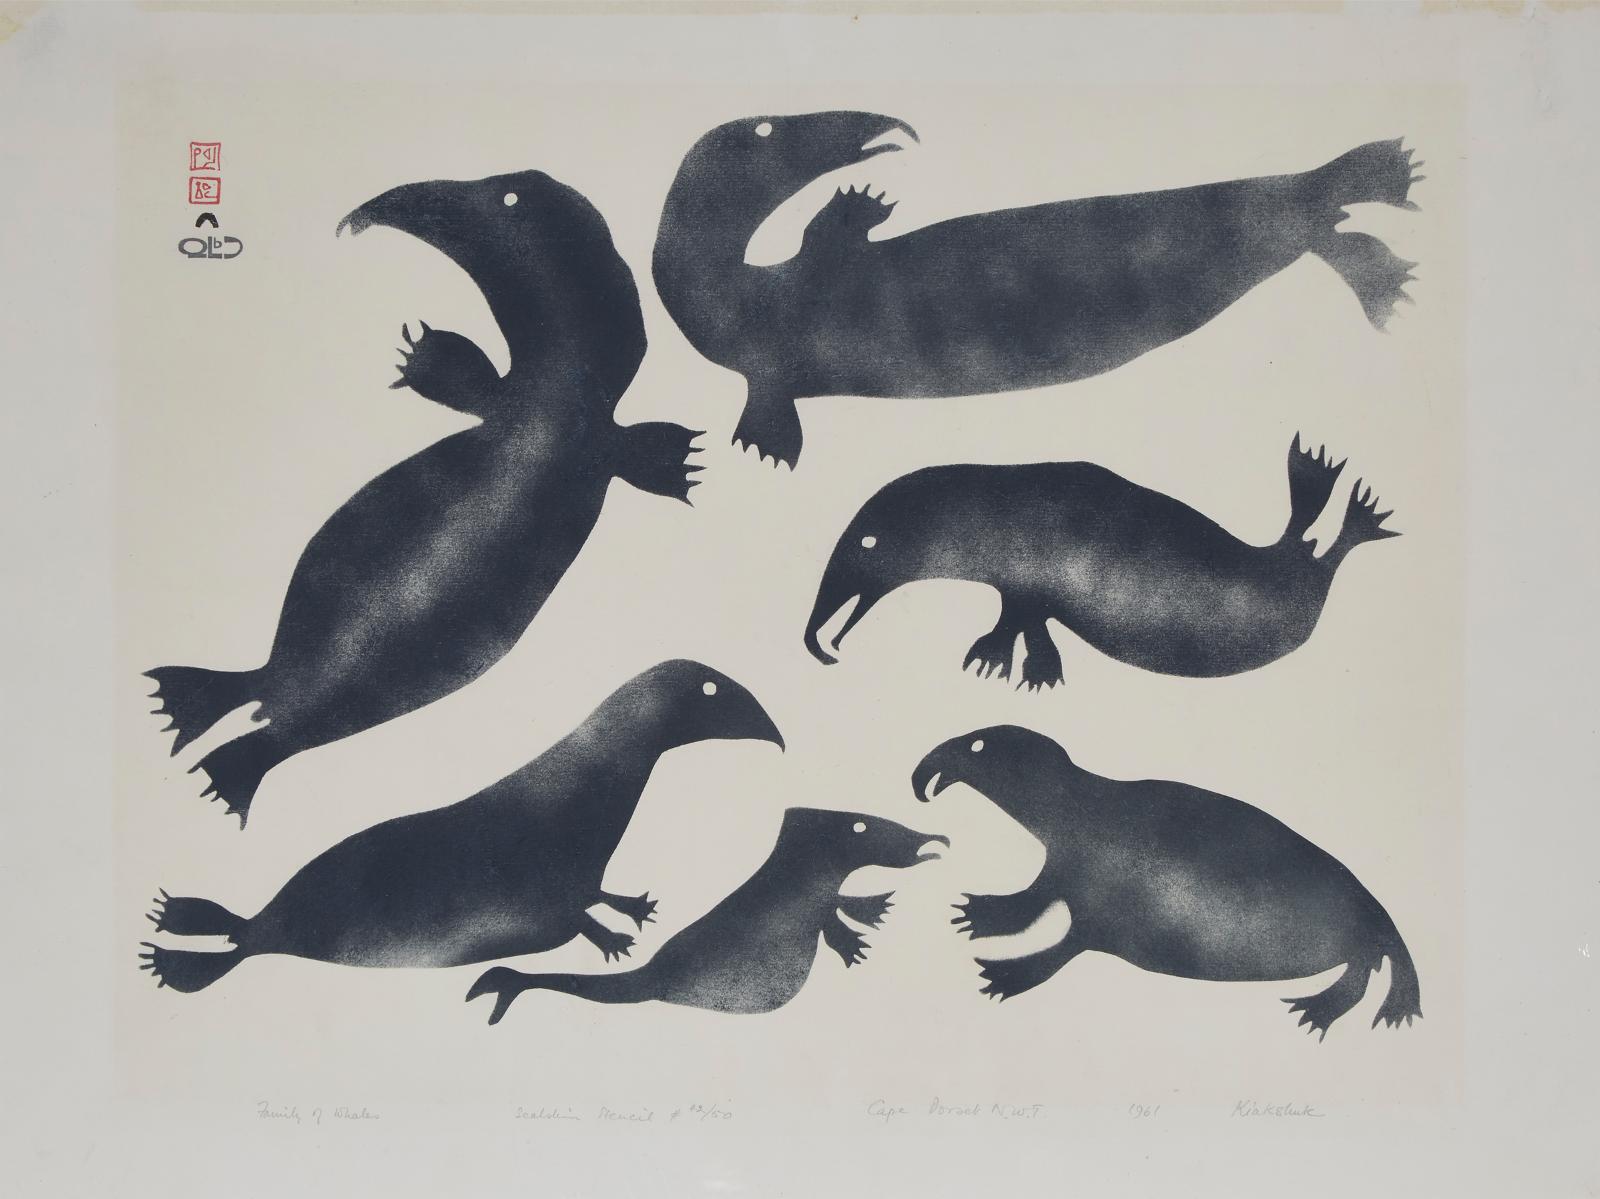 Kiakshuk (1886-1966) - Family Of Whales